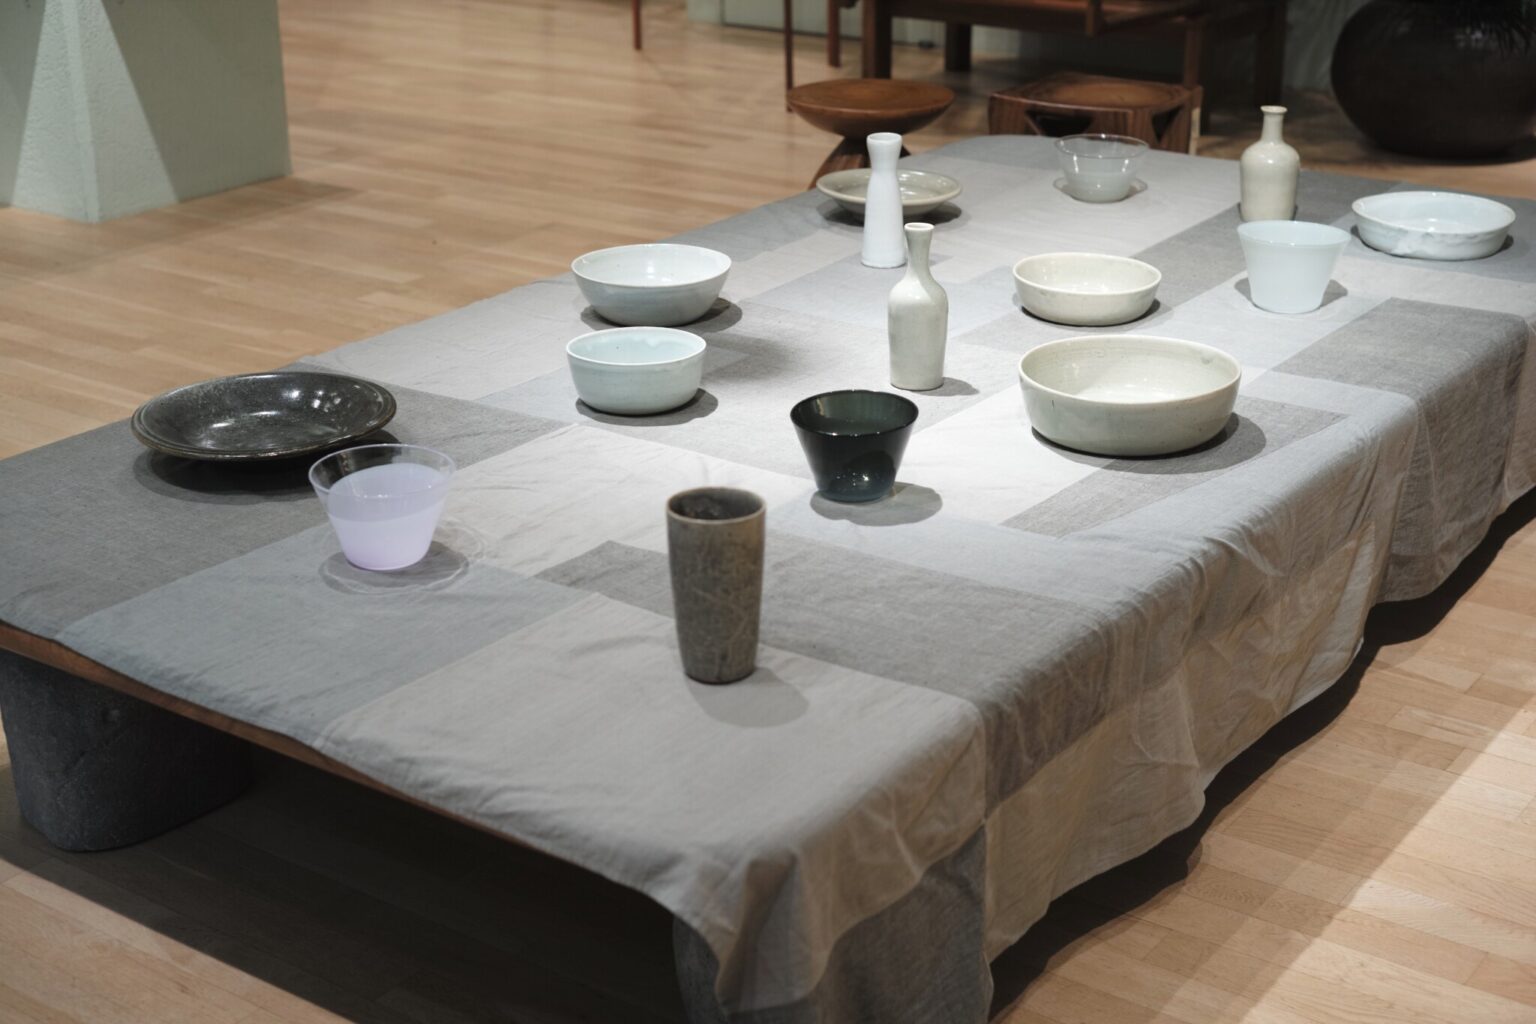 ババグーリ清澄本店で開催された郡司製陶所との展示「Grey」より。